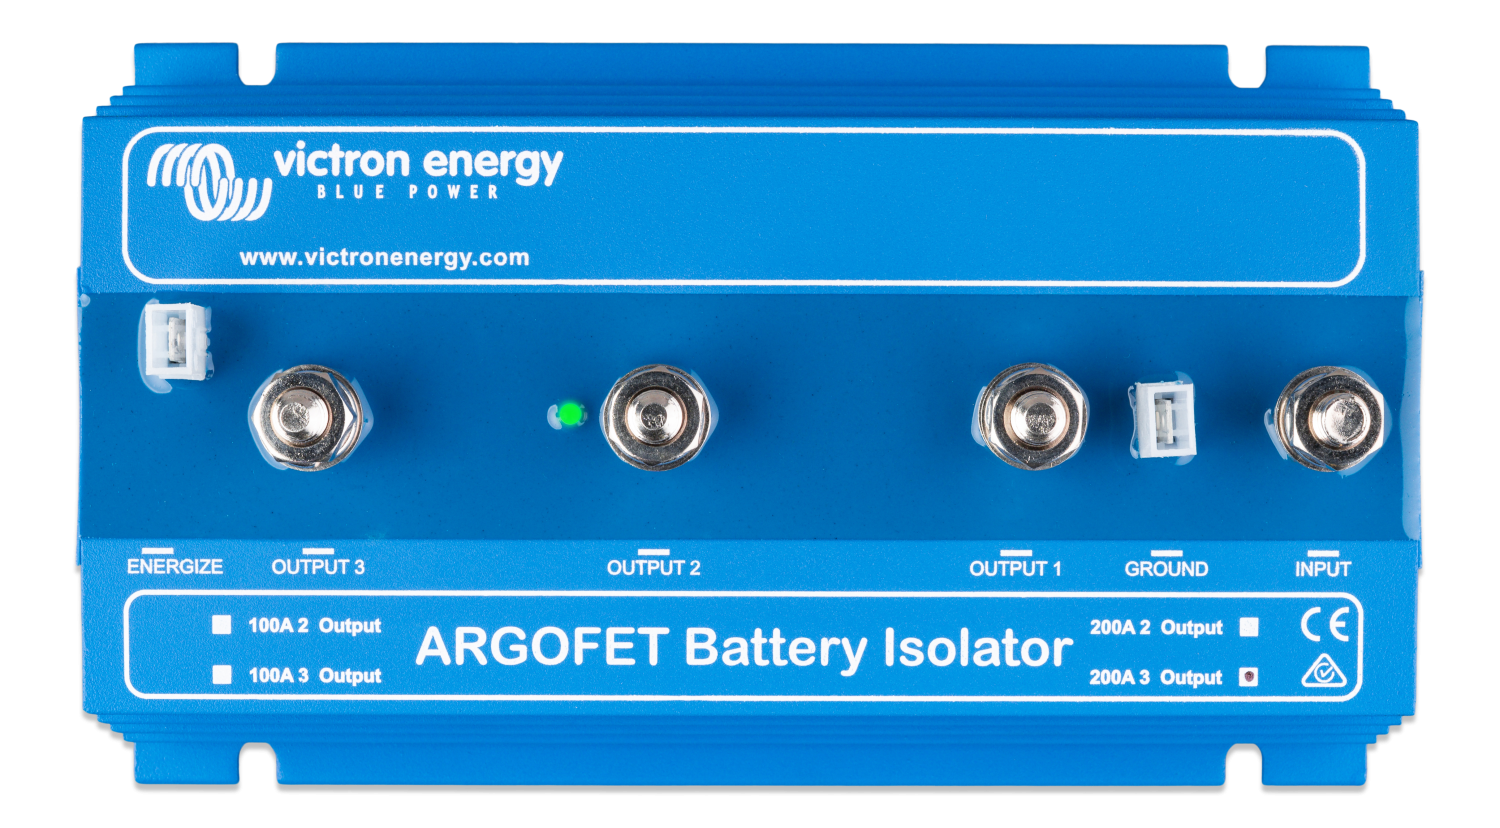 laadstroomverdeler-200-3-3-batteries-100-ah-argofet200-3